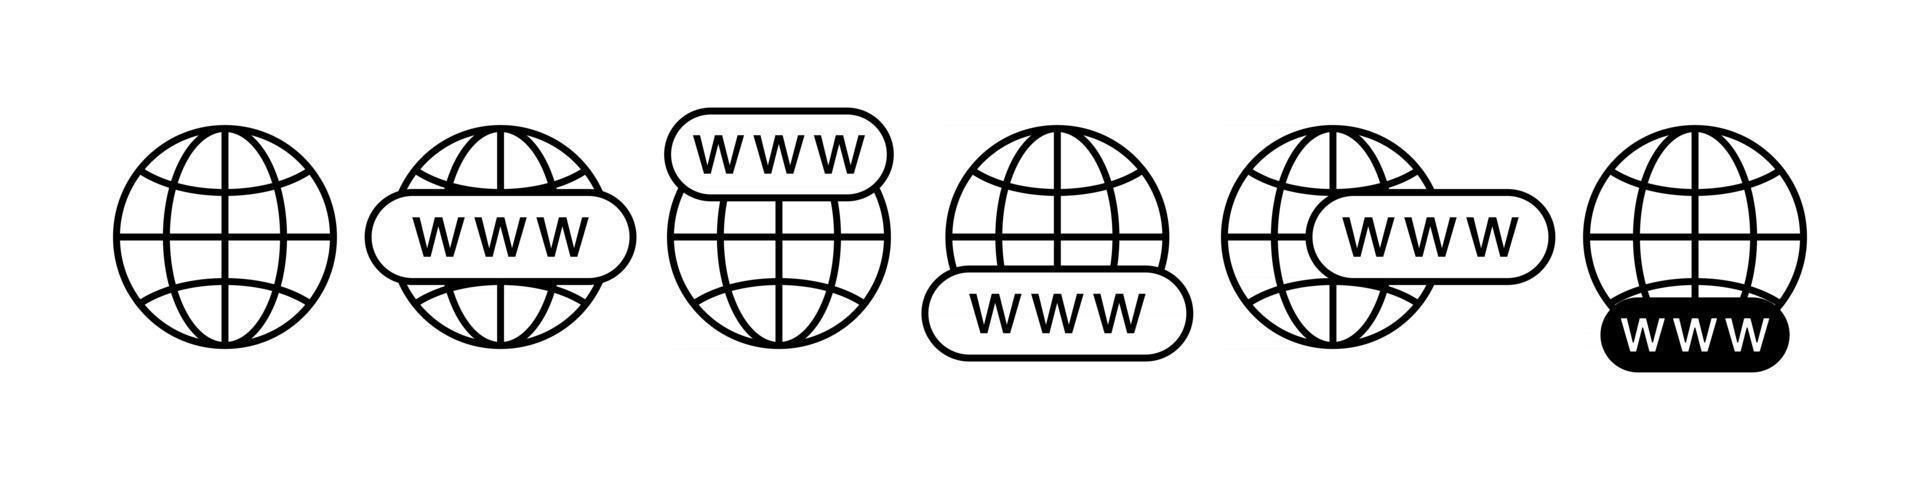 conjunto de iconos de búsqueda de internet www vector